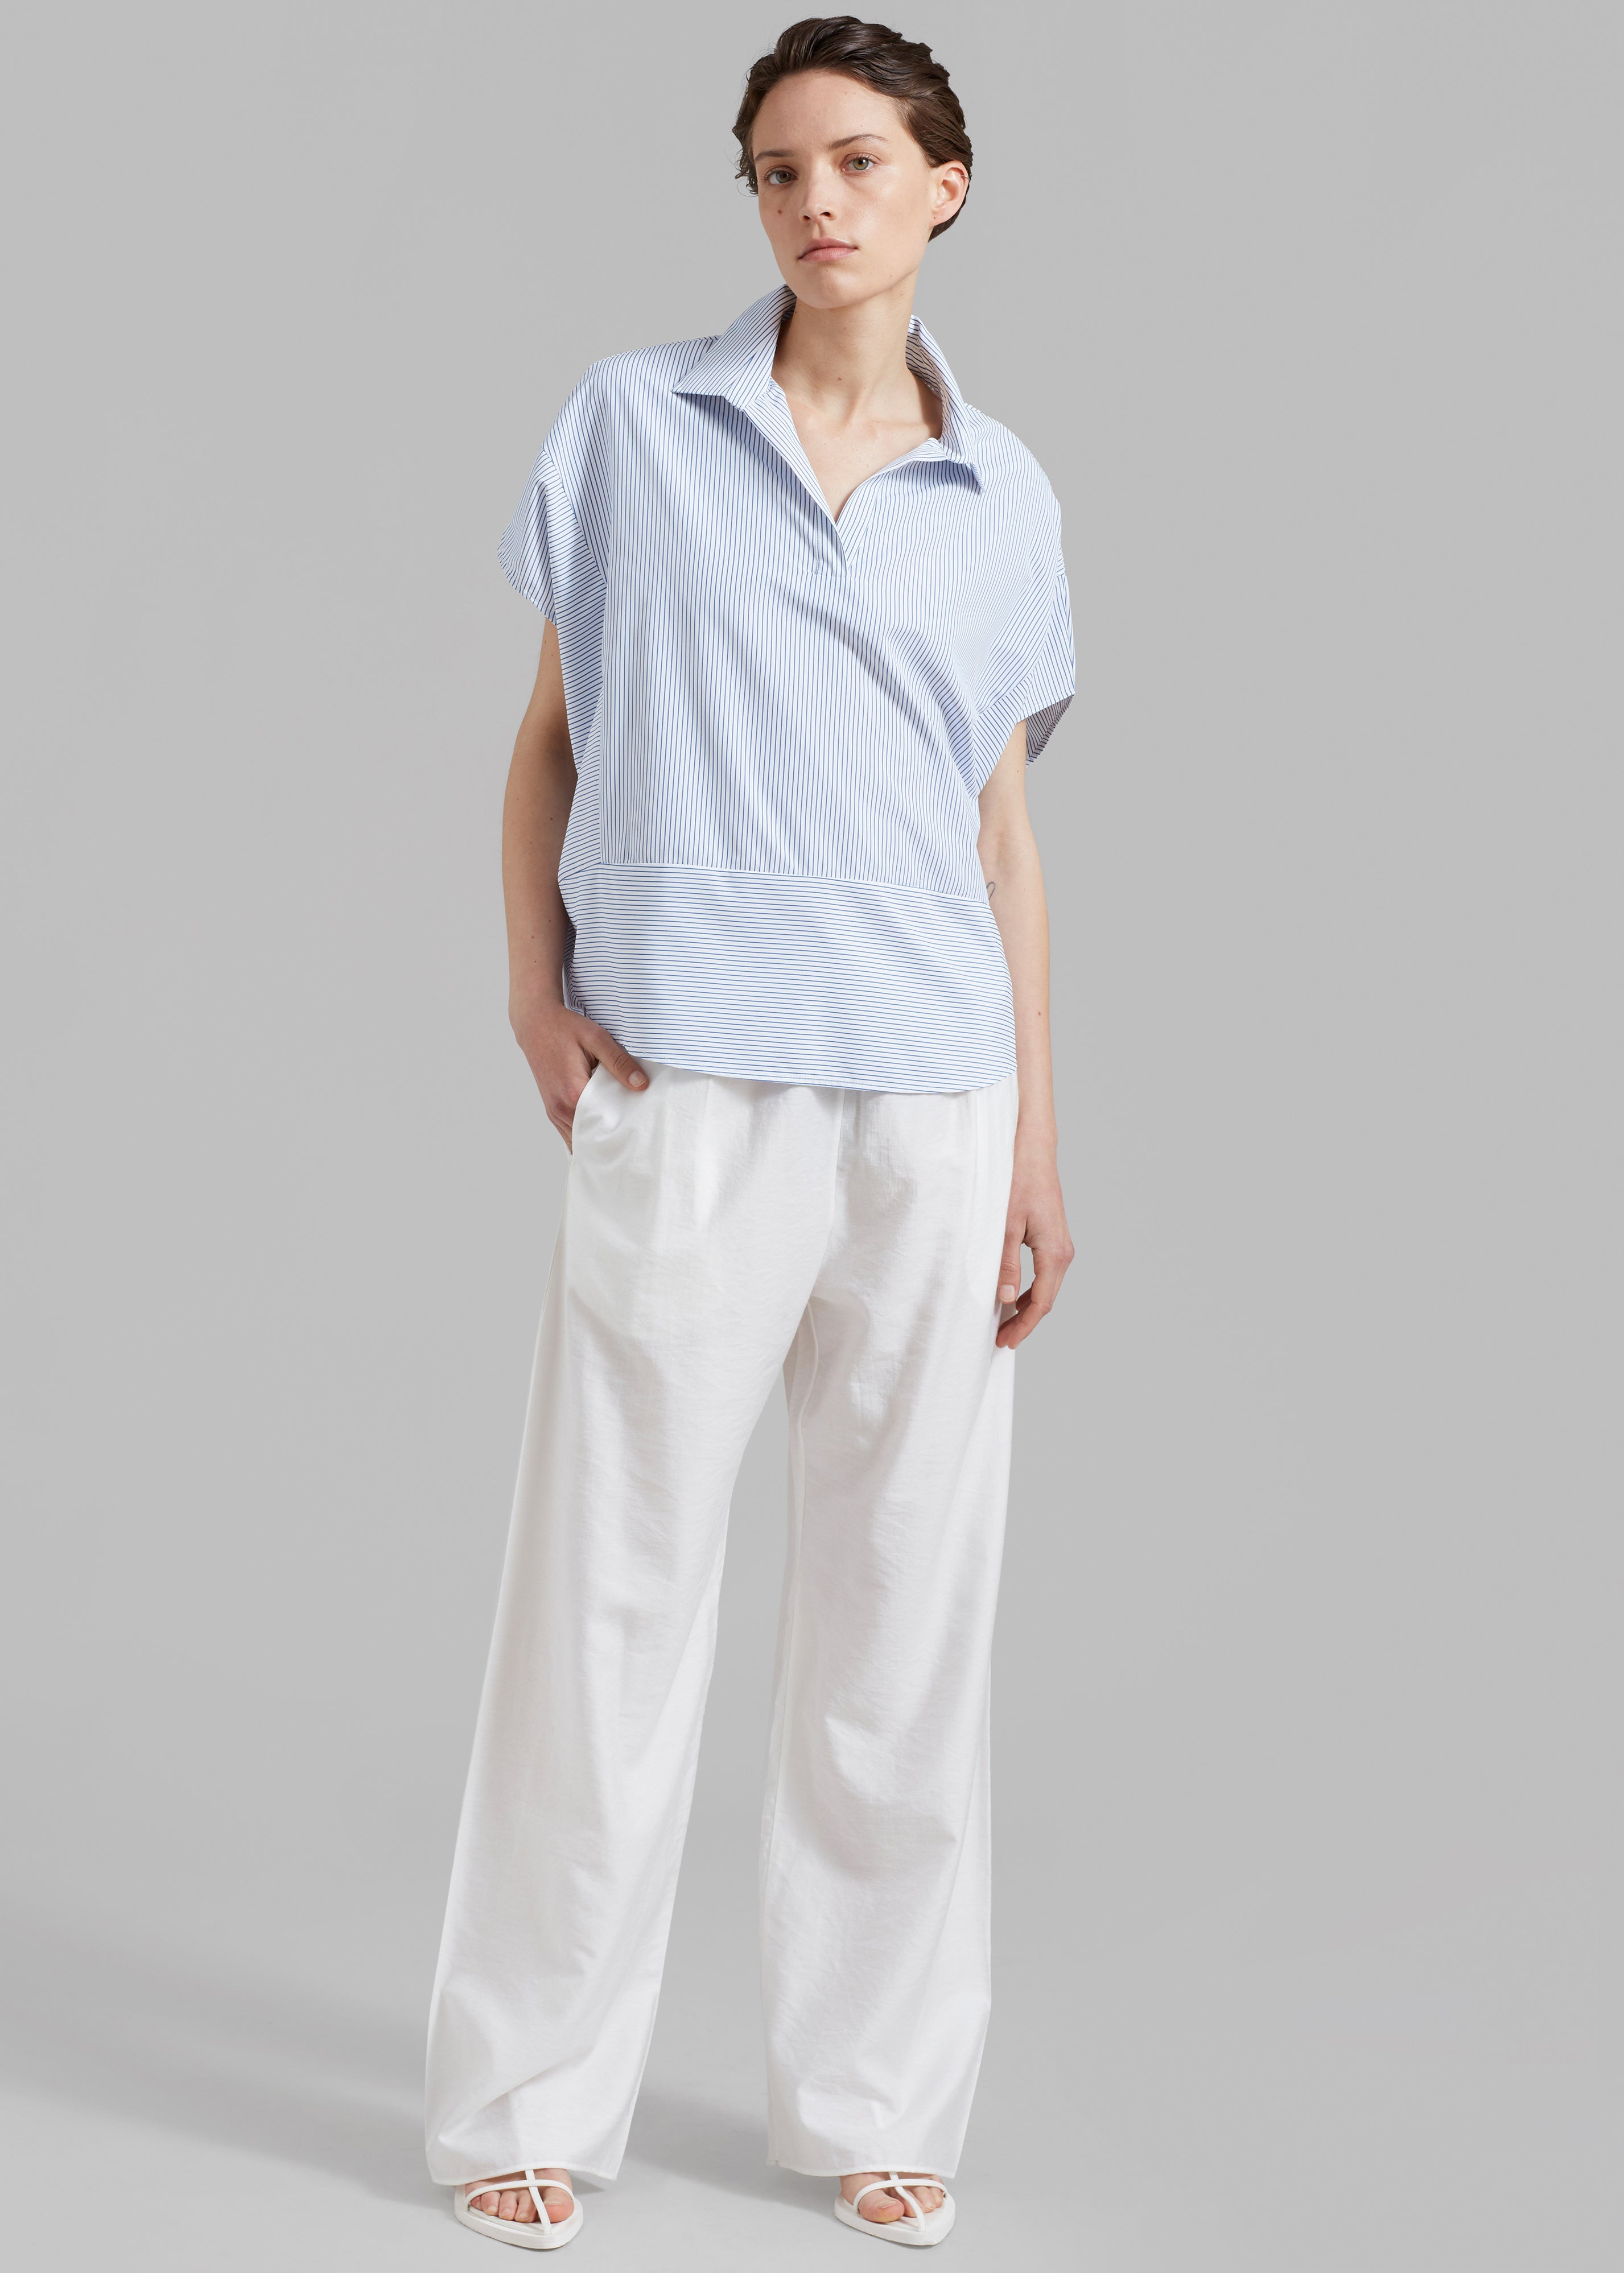 Flora Dolman Shirt - Blue Stripe - 10